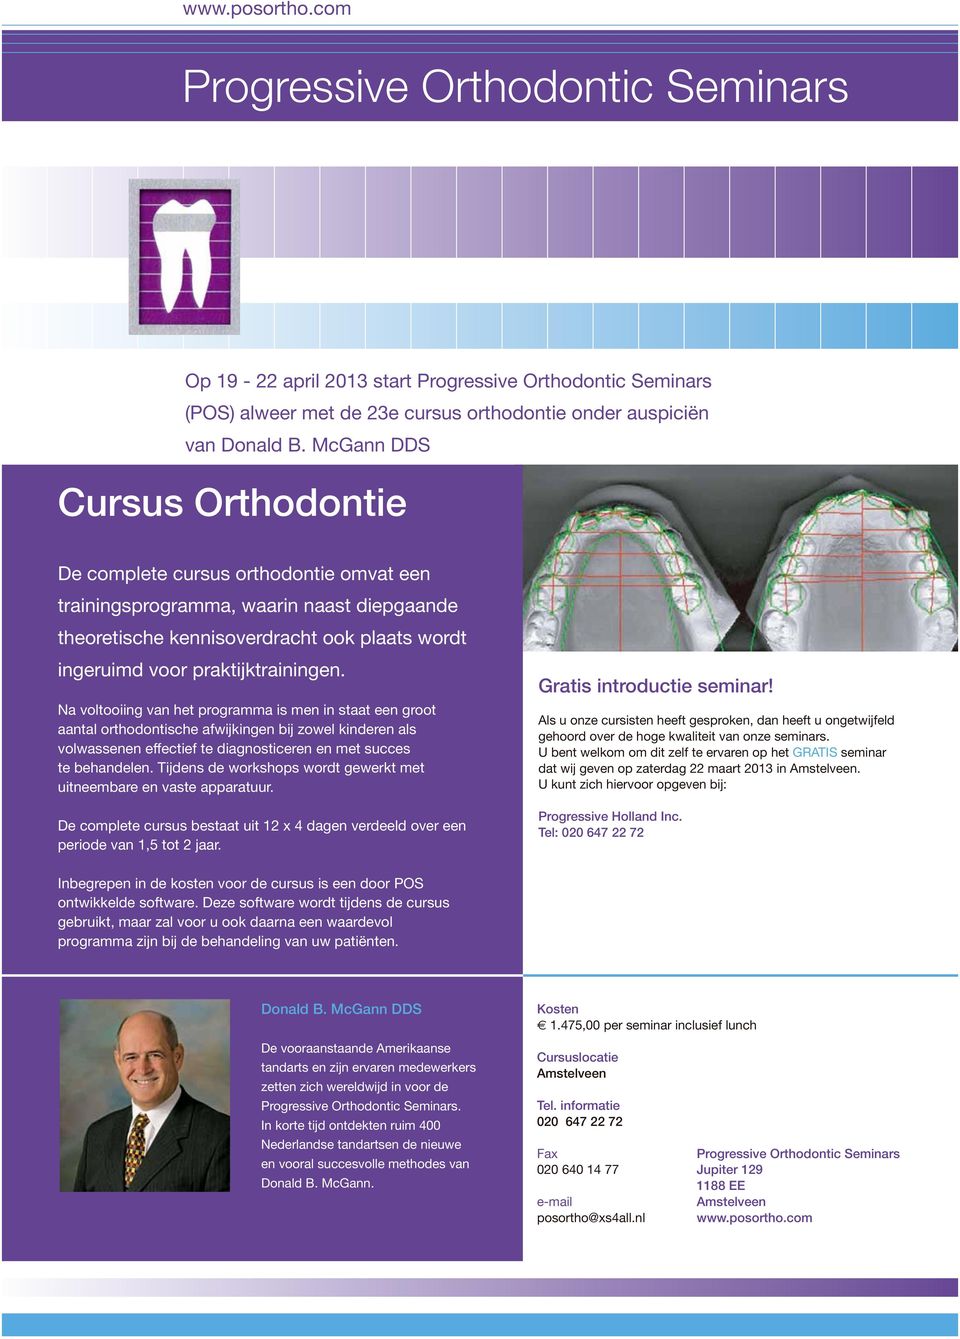 Na voltooiing van het programma is men in staat een groot aantal orthodontische afwijkingen bij zowel kinderen als volwassenen effectief te diagnosticeren en met succes te behandelen.